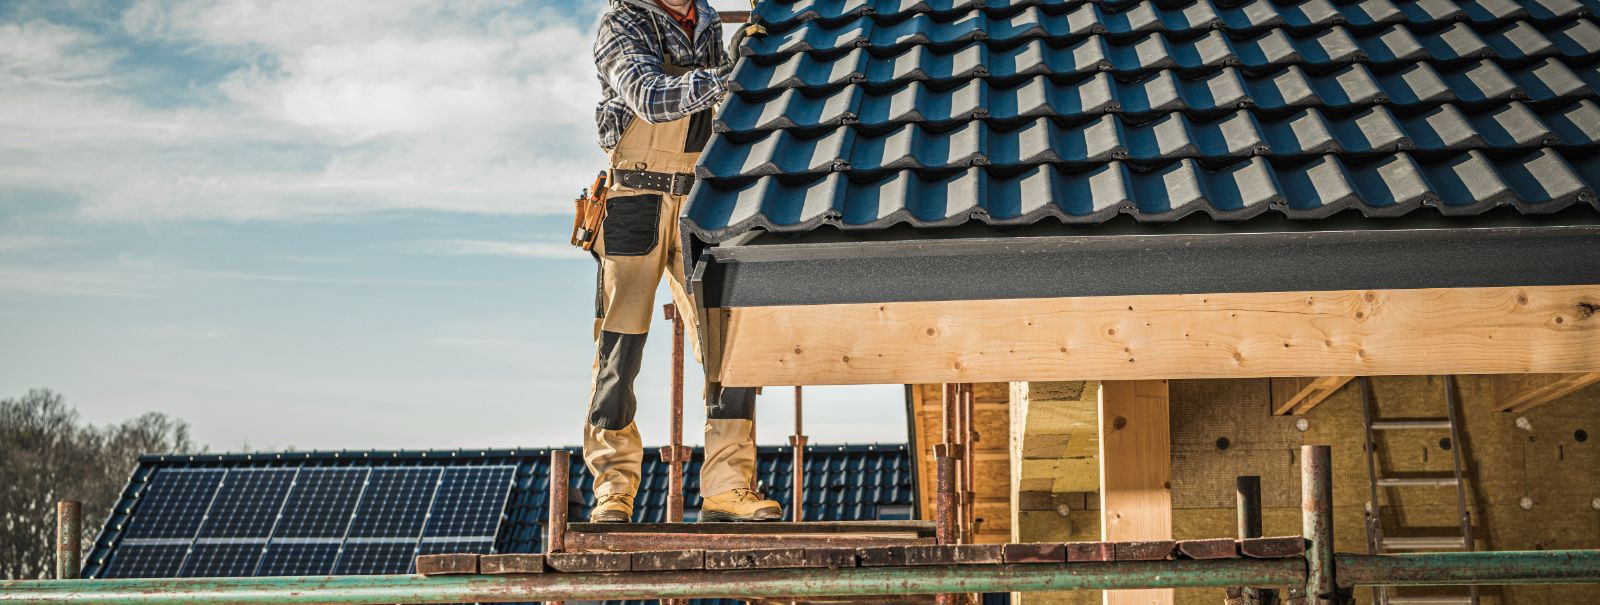 Kui on vaja kaitsta oma kodu või ärihoonet, on katus üks kõige kriitilisemaid komponente. See kaitseb struktuuri elementide eest, aitab kaasa hoone üldisele ene